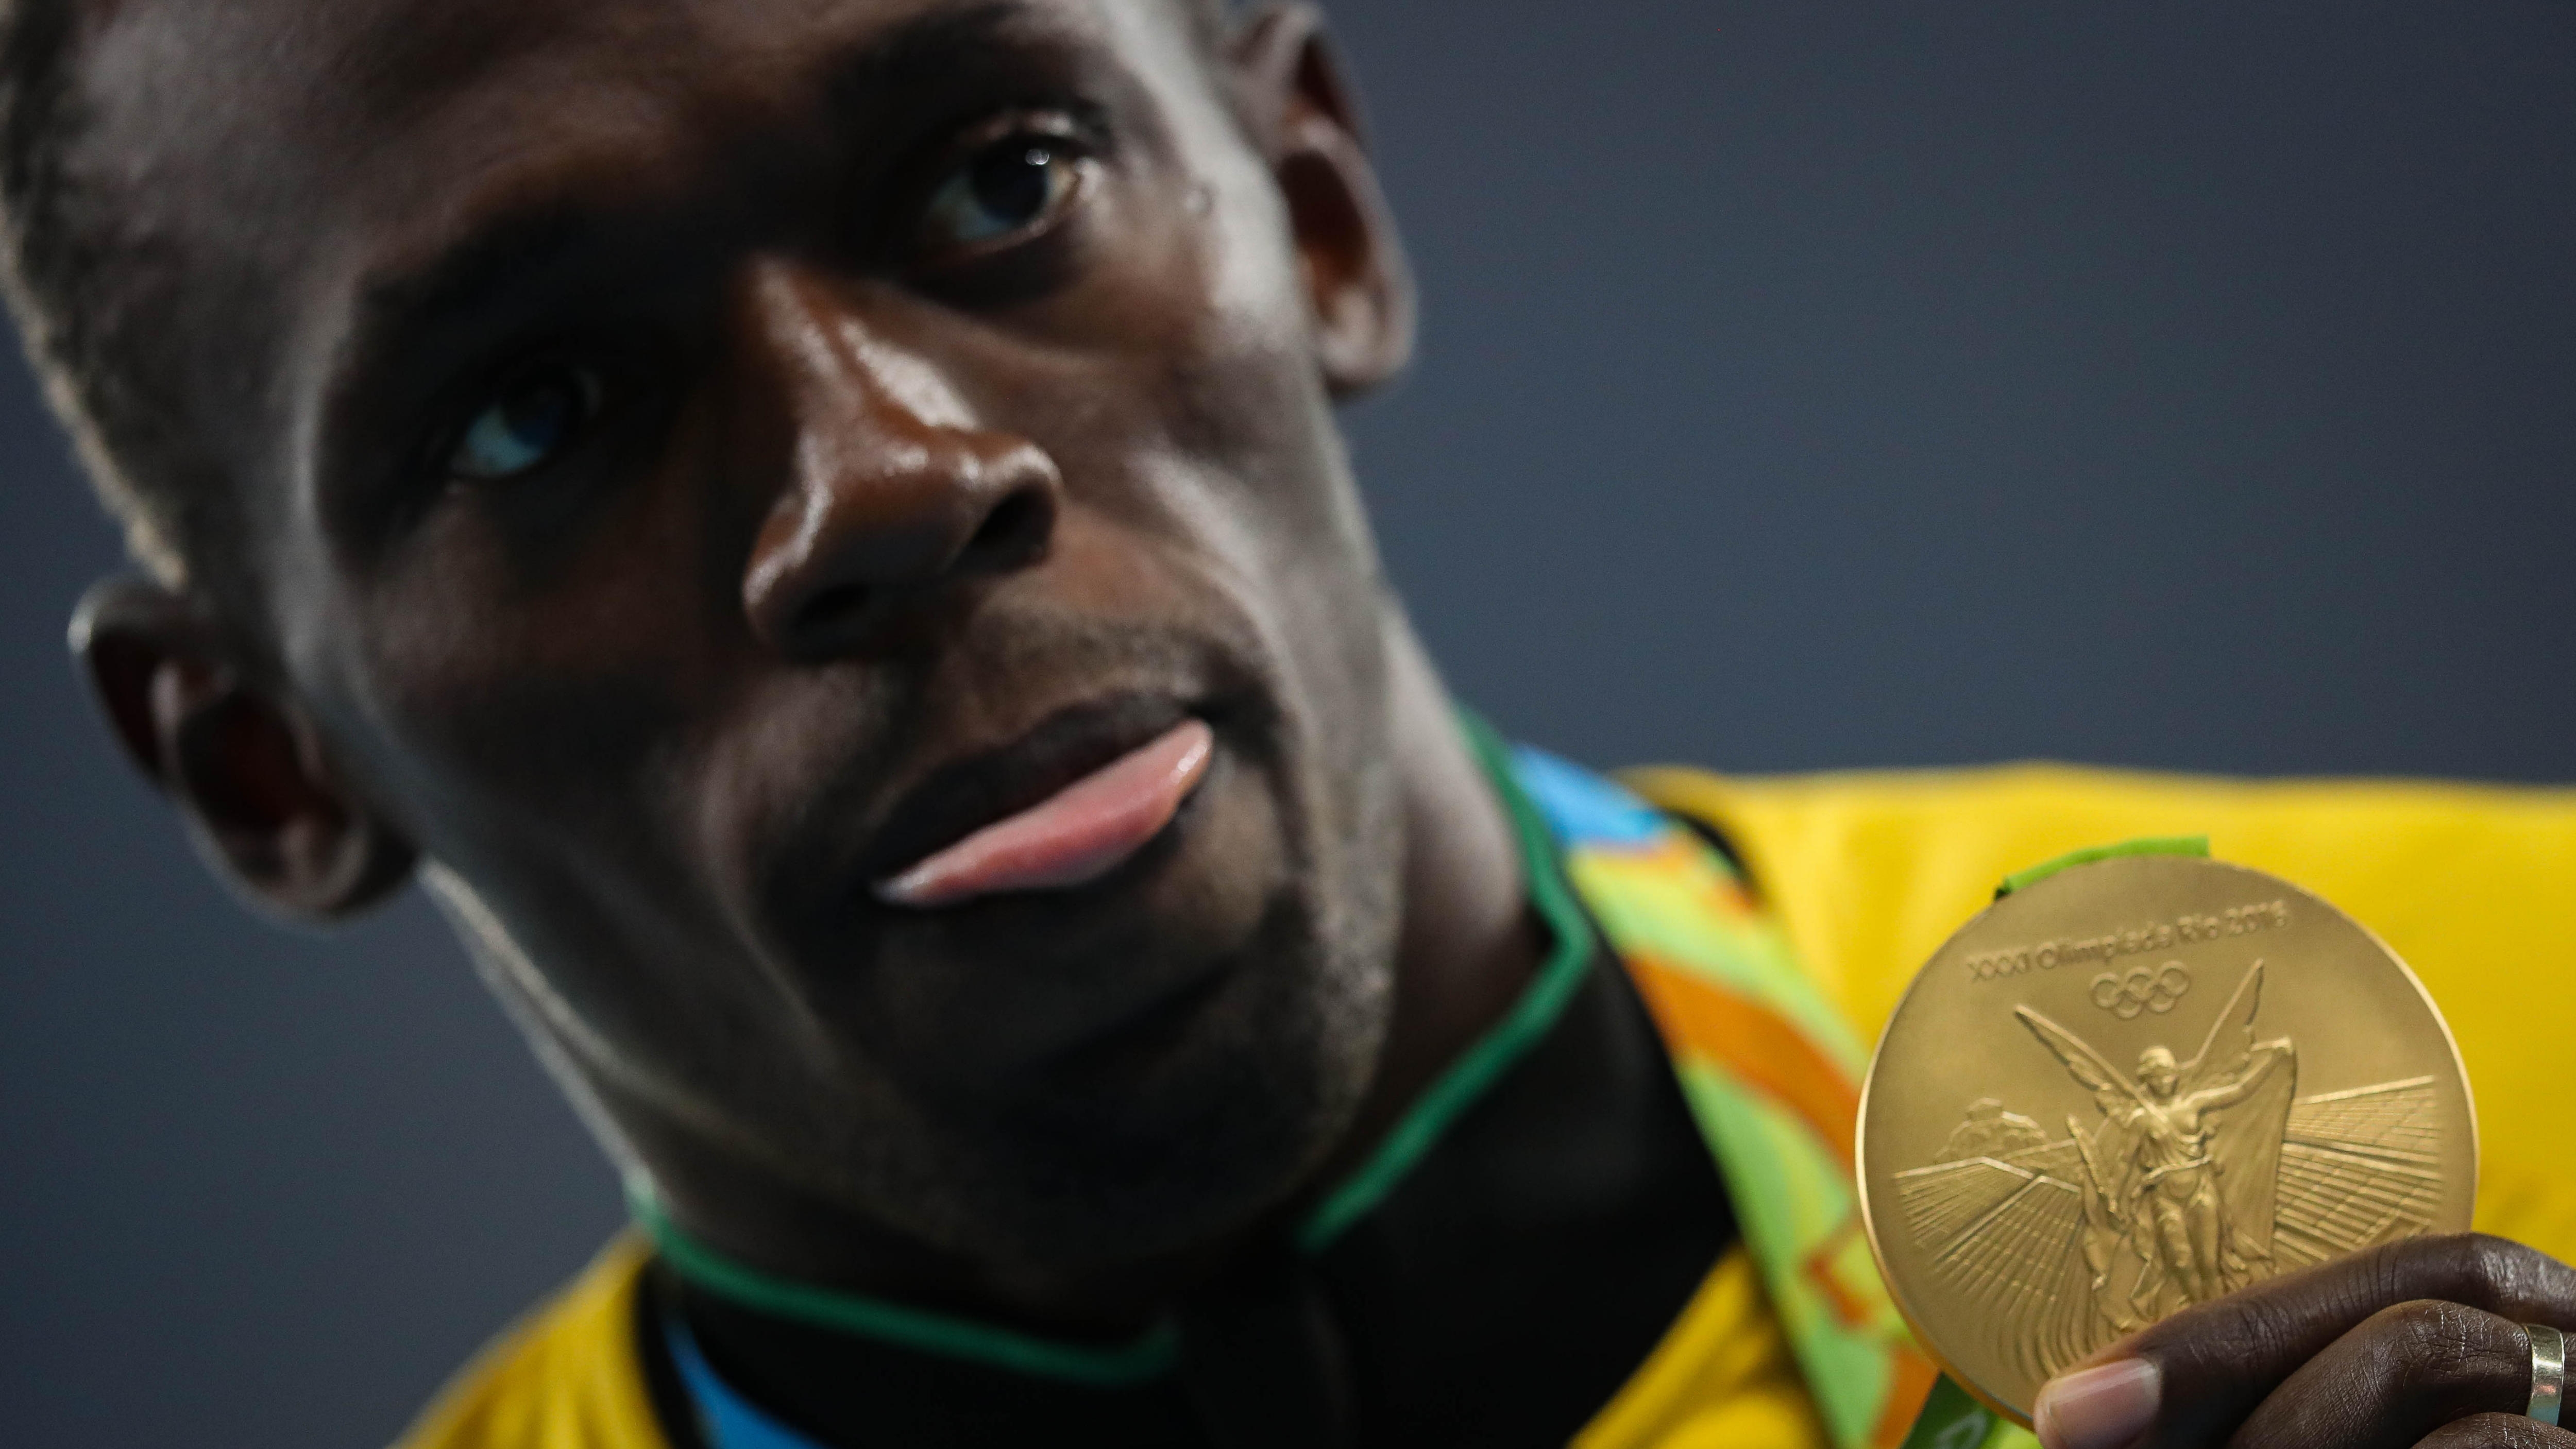 El exmedallista olímpico Usain Bolt denunció un robo multimillonario de sus cuentas bancarias: quién sería el principal acusado